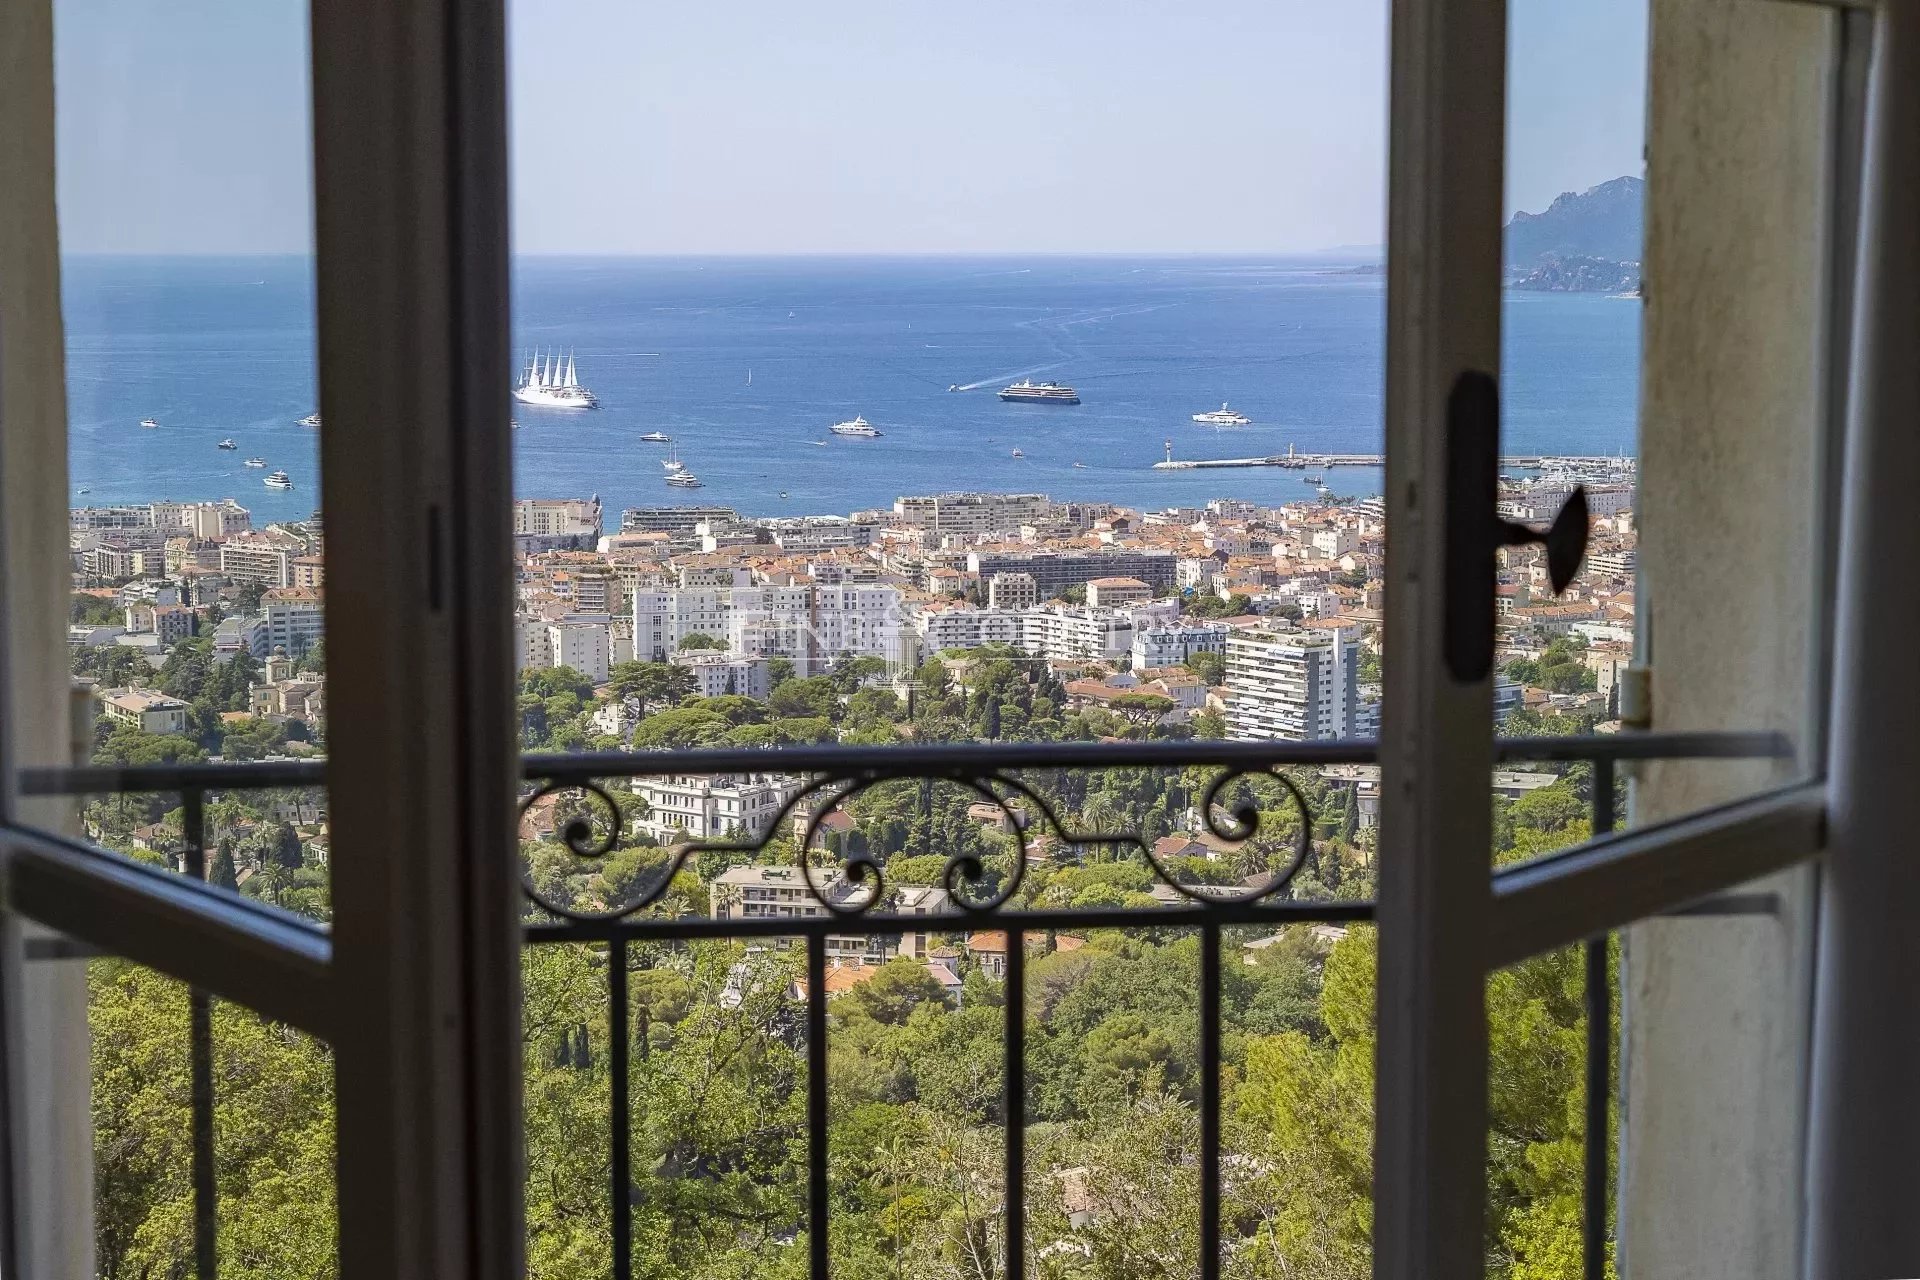 Sea view Villa for sale in Cannes